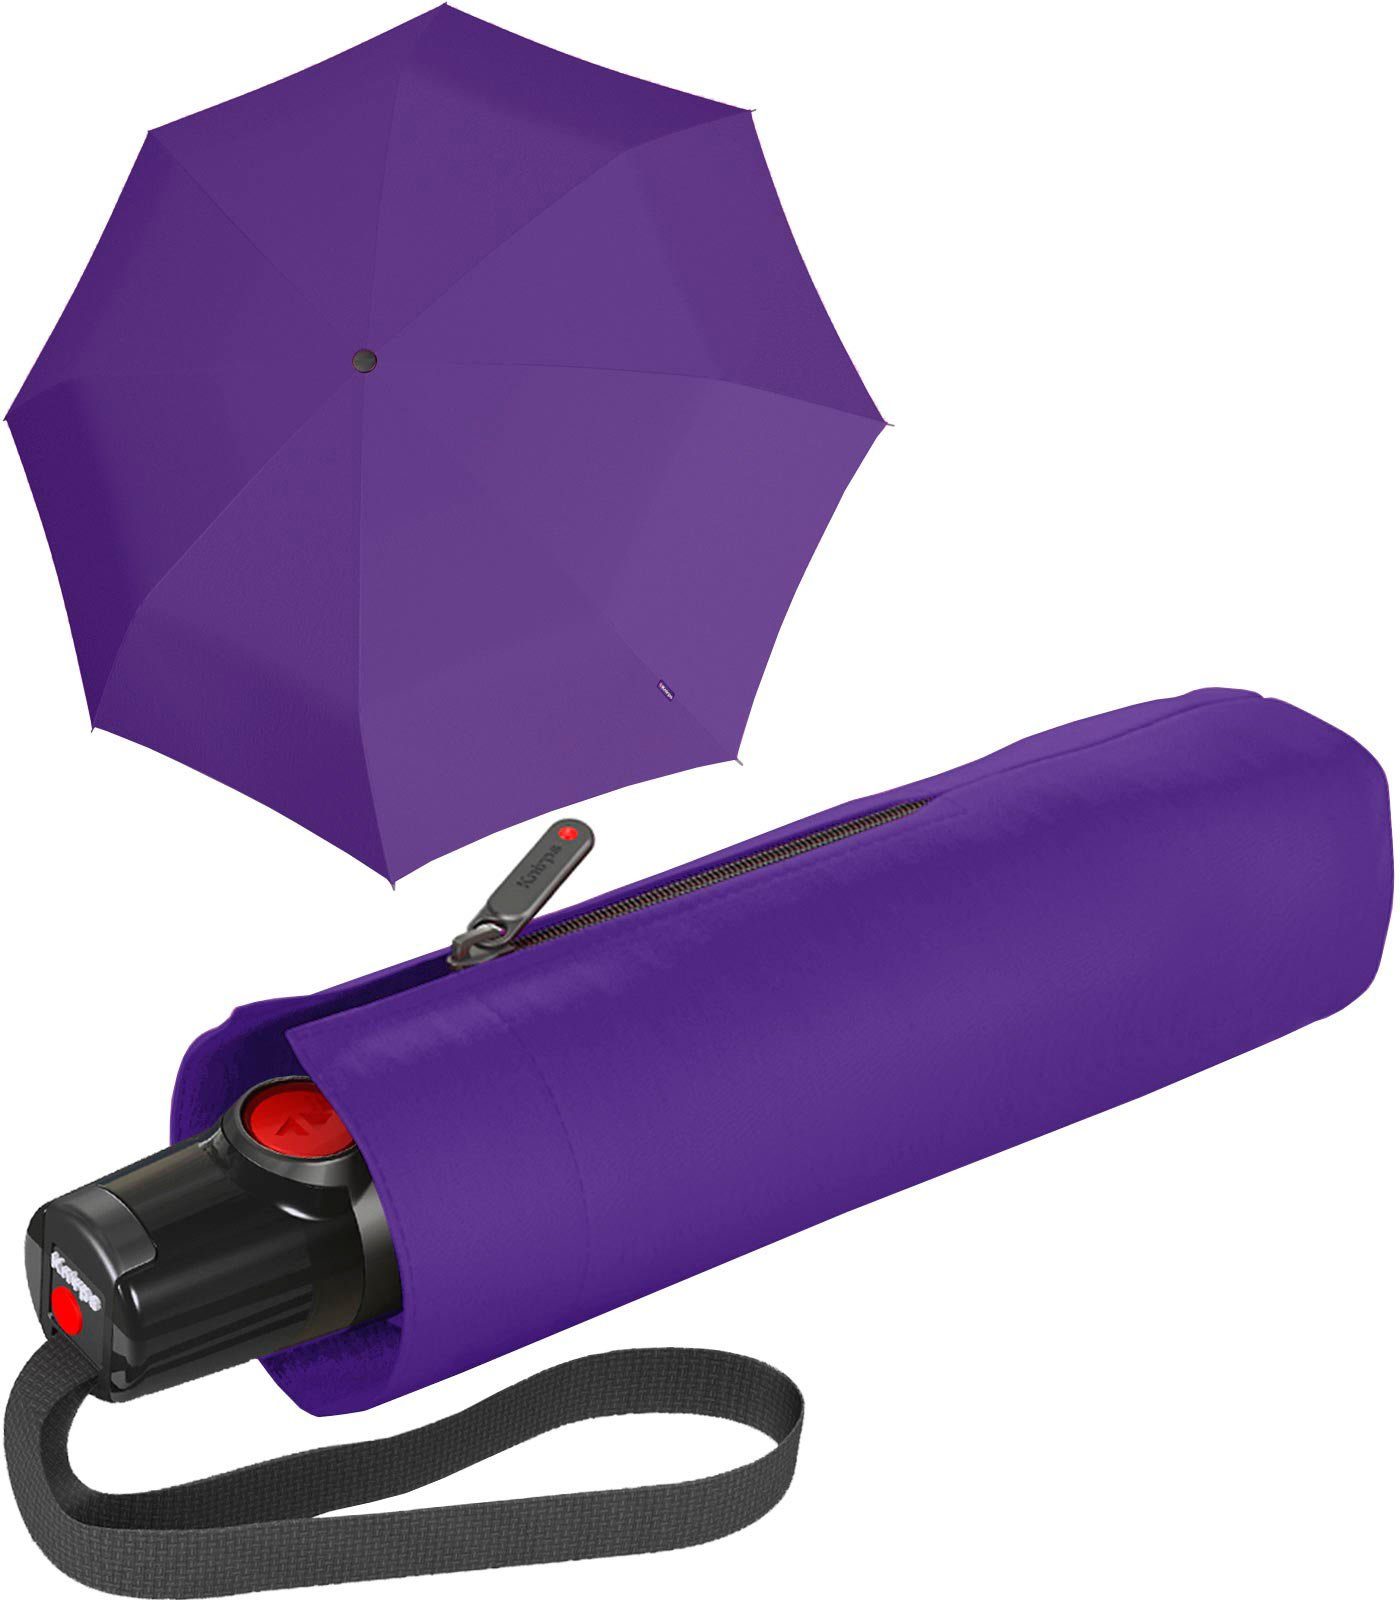 T.100 Automatikschirm mit für Taschenregenschirm Duomatic kleiner die Auf-Zu-Automatik, Handtasche Knirps® violett